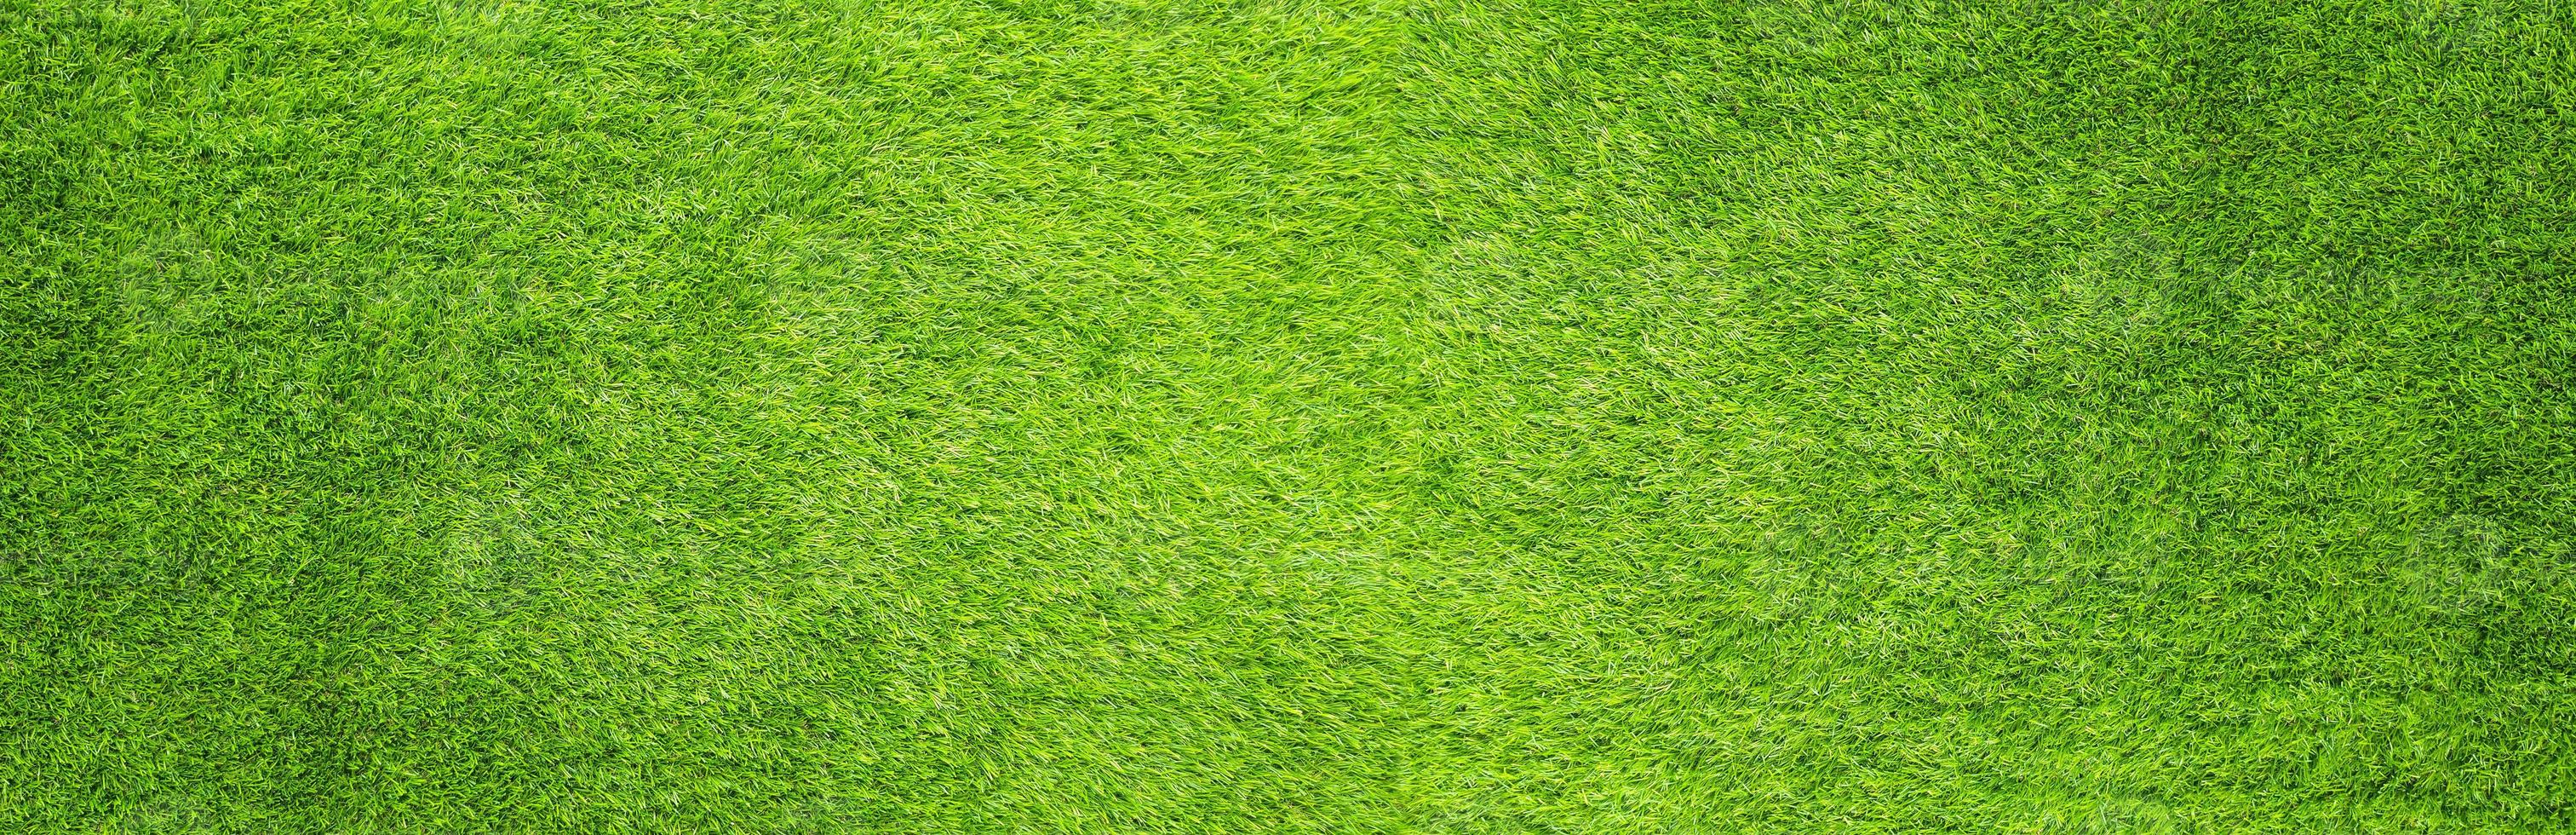 fondo de textura de patrón de hierba verde artificial foto